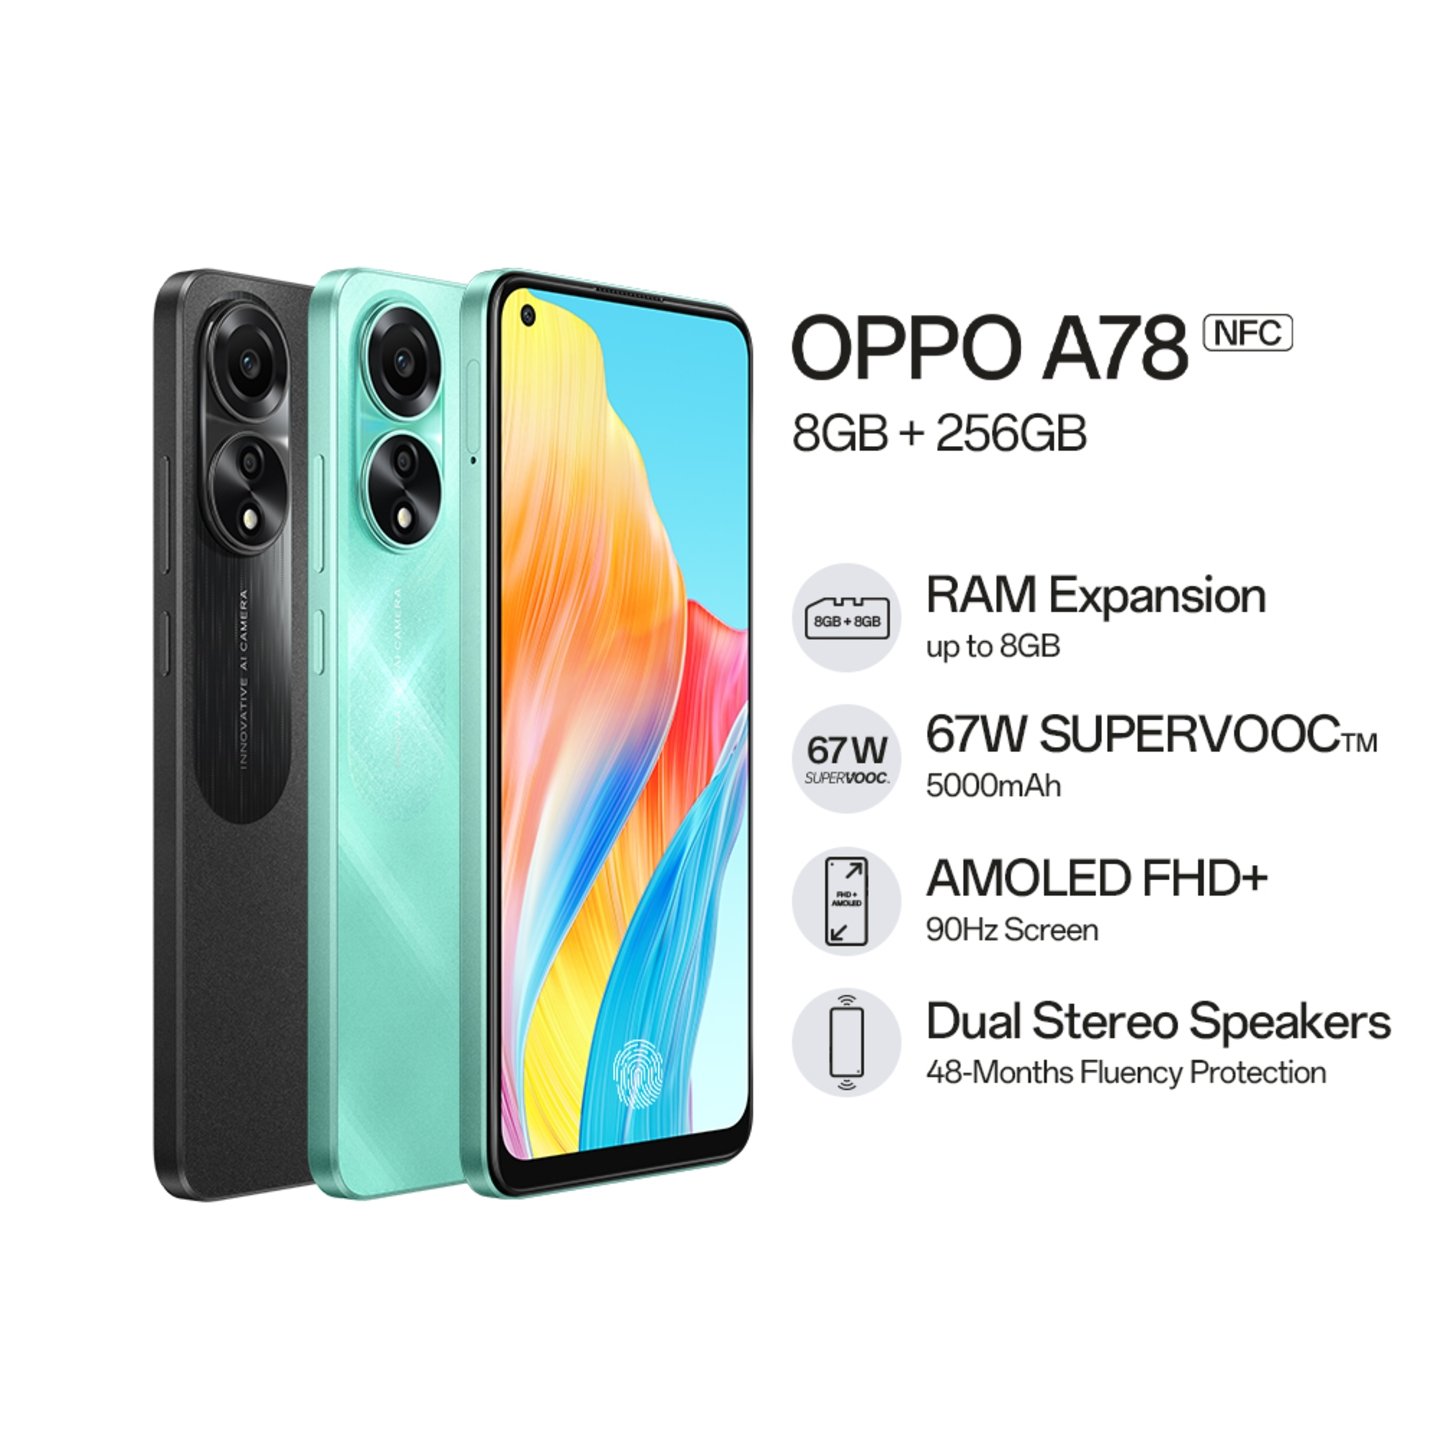 OPPO lanza la versión 4G del OPPO A78 5G